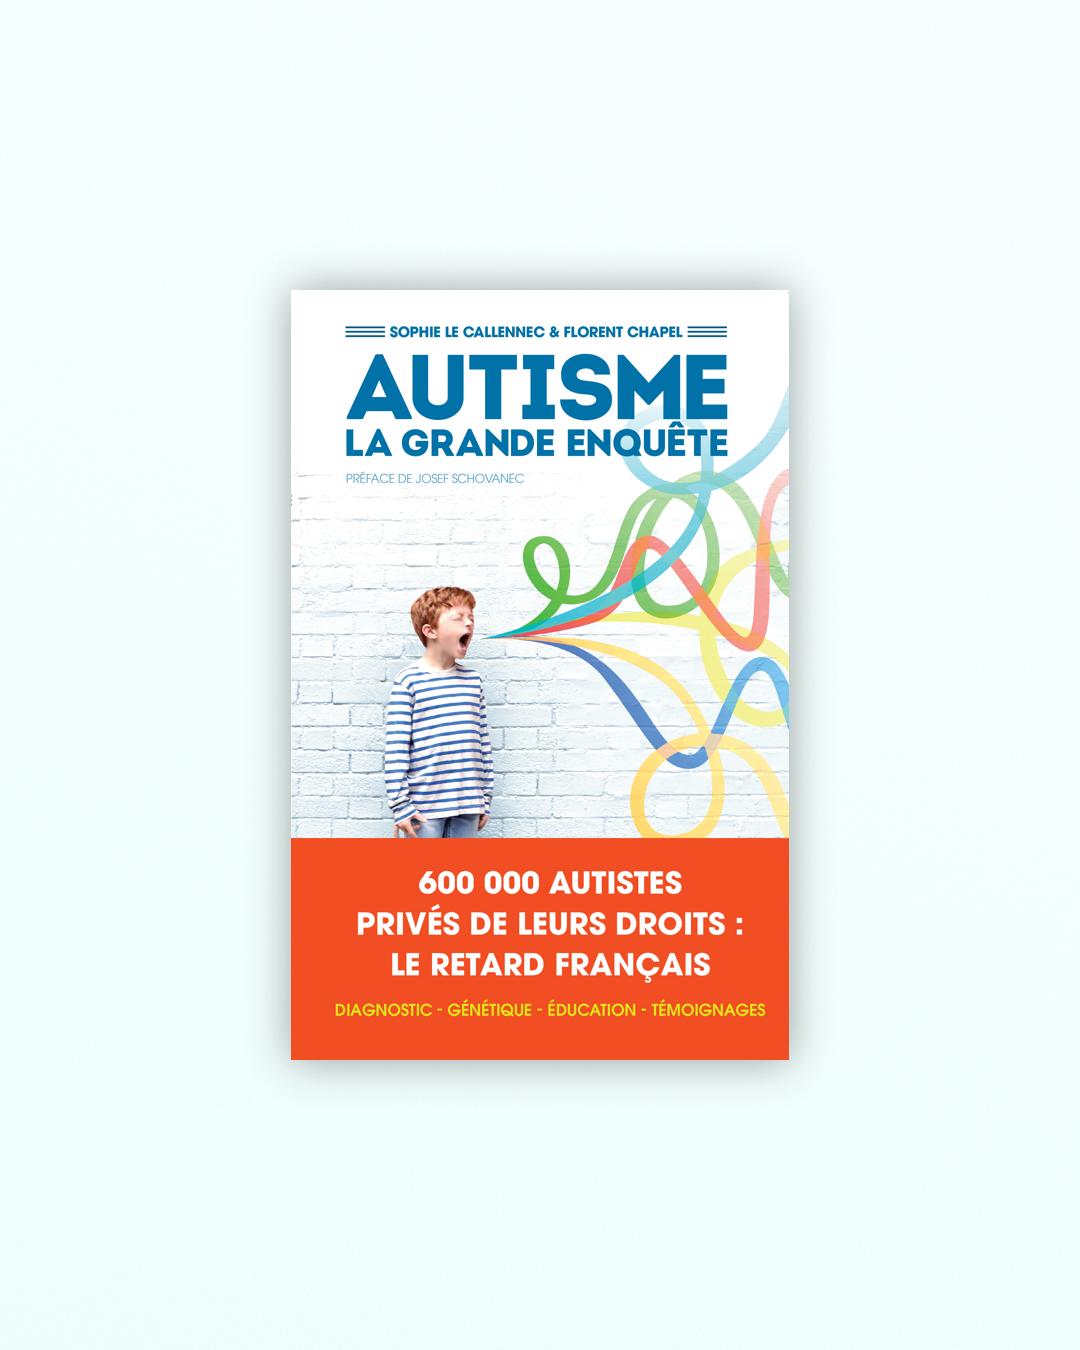 https://arenes.fr/wp-content/uploads/2016/01/c_autisme-la-grande-enquete.jpg